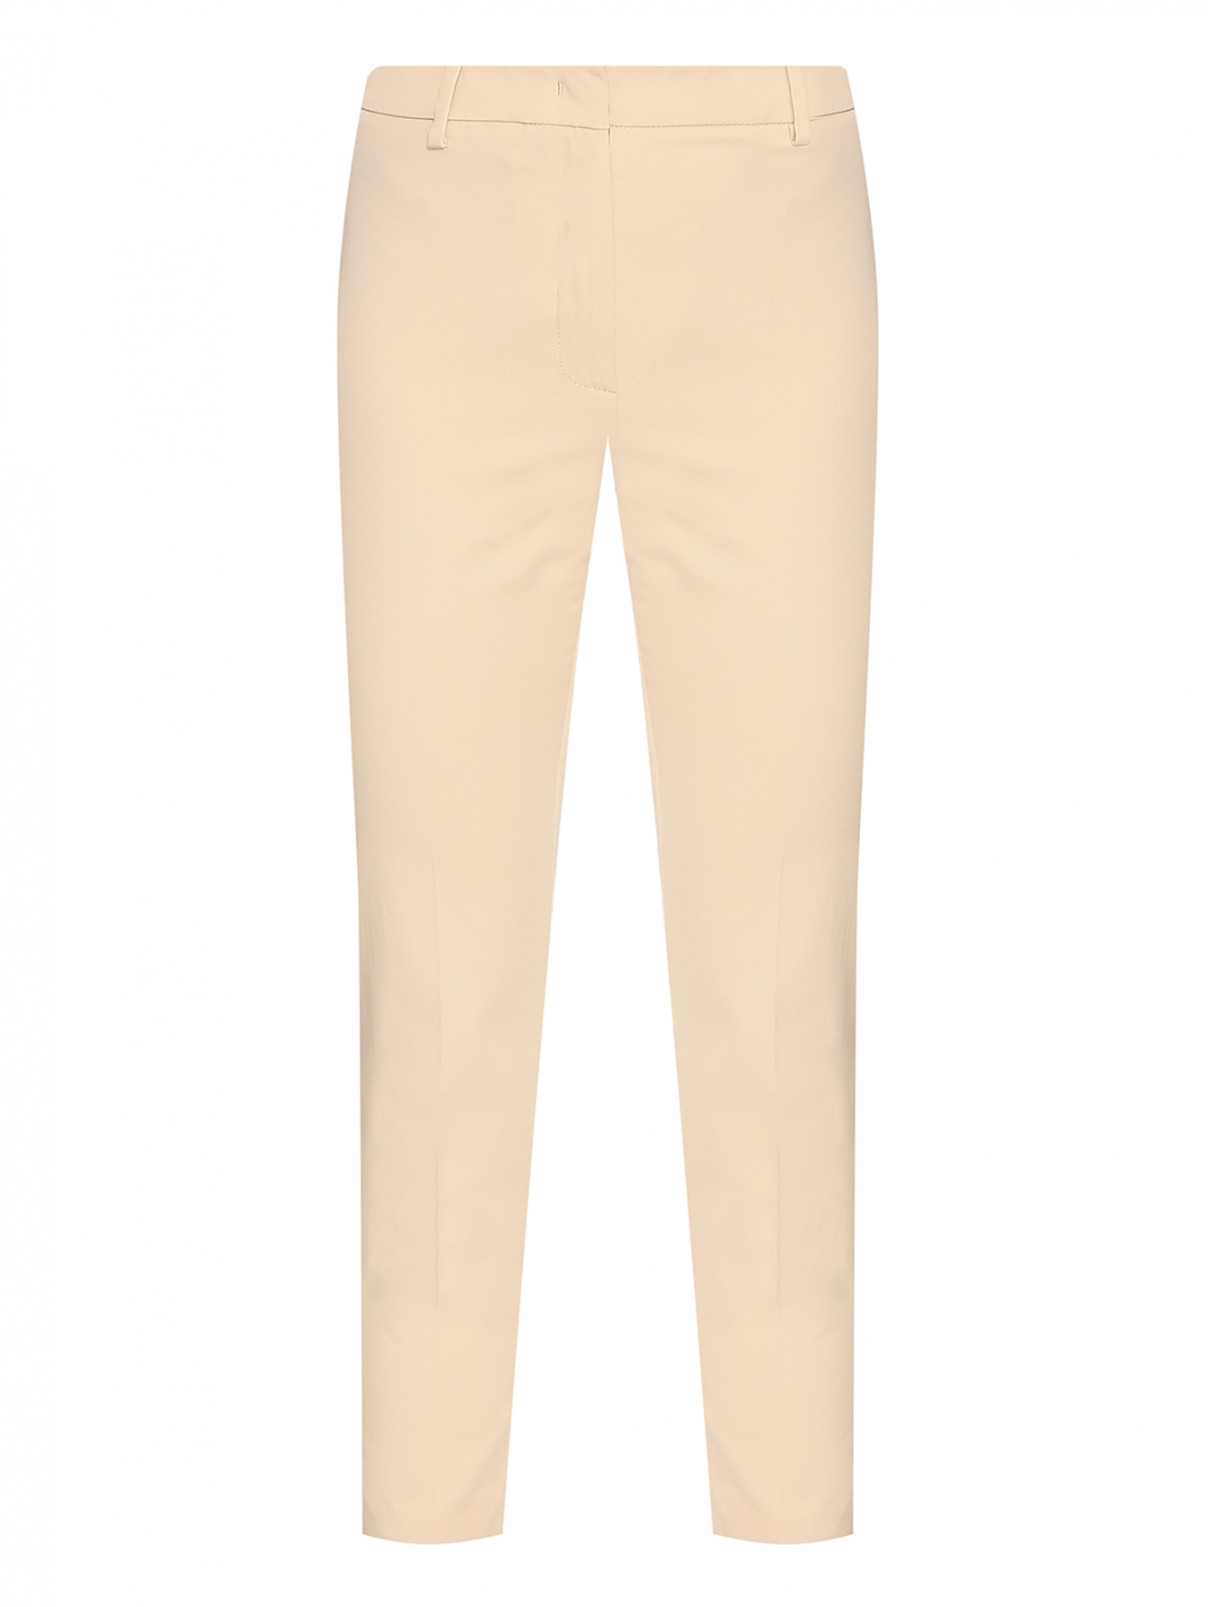 Однотонные брюки из хлопка Weekend Max Mara  –  Общий вид  – Цвет:  Бежевый